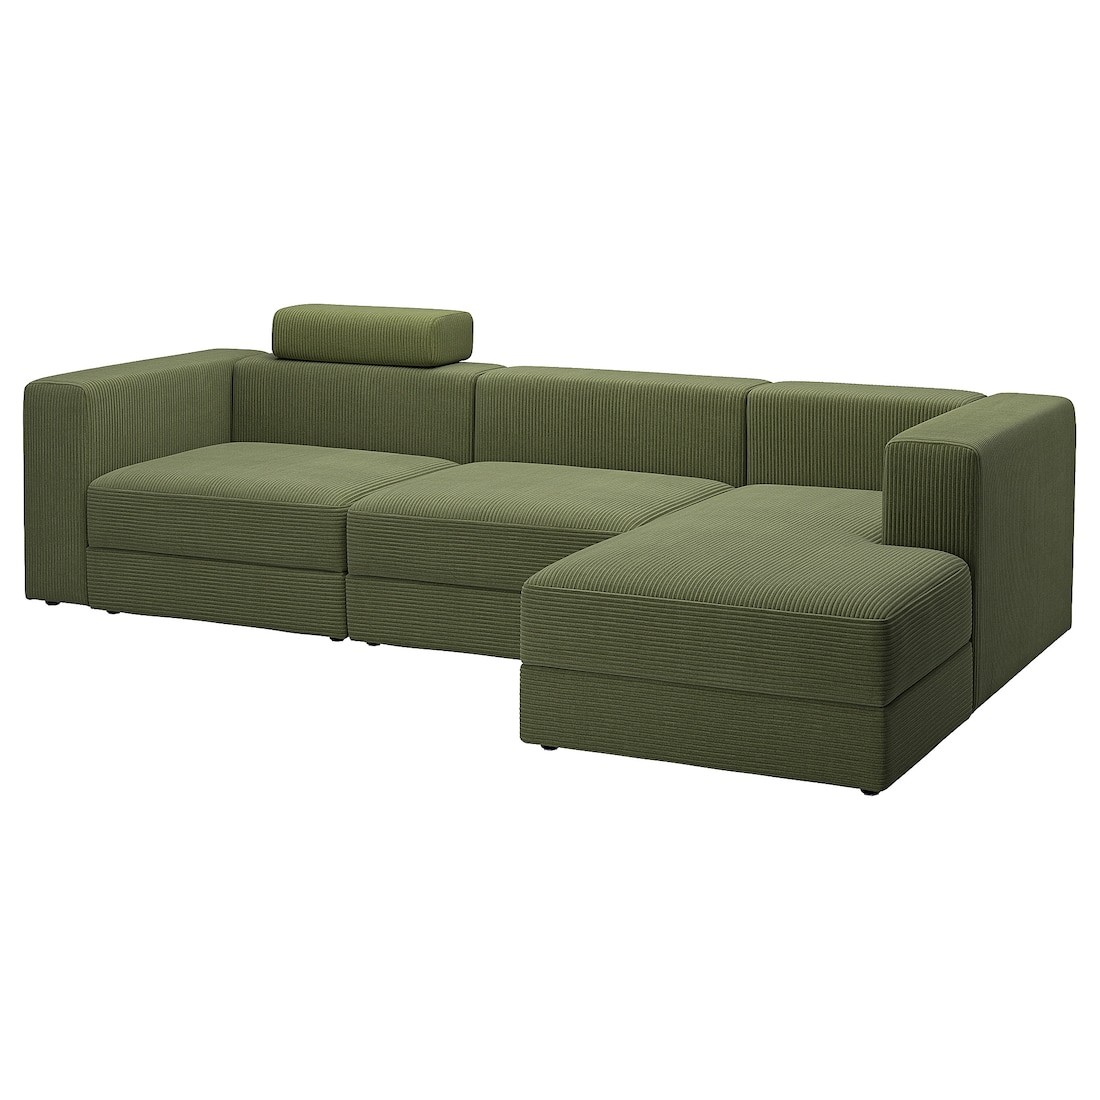 JÄTTEBO 4-местный модульный диван с козеткой, правосторонний с изголовьем / Samsala тёмный жёлто-зелёный